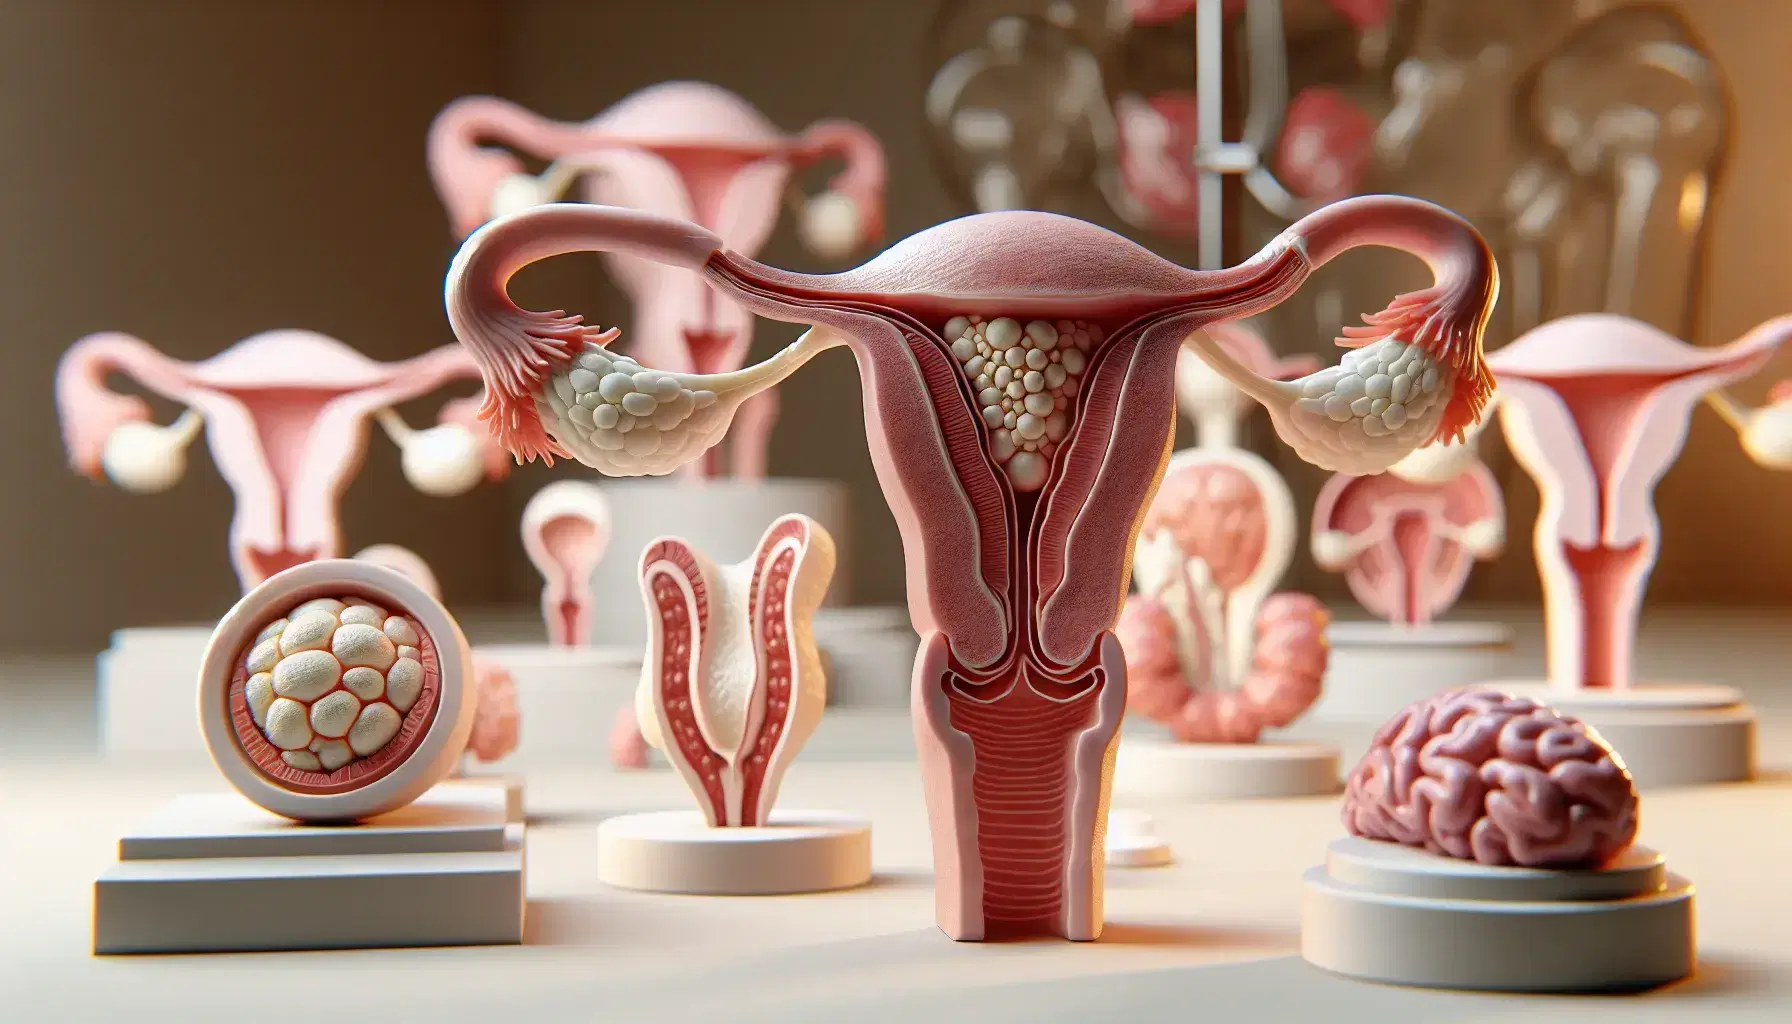 Modelo anatómico tridimensional del sistema reproductor femenino con útero, trompas de Falopio y ovarios en primer plano, y fases del ciclo menstrual al fondo.